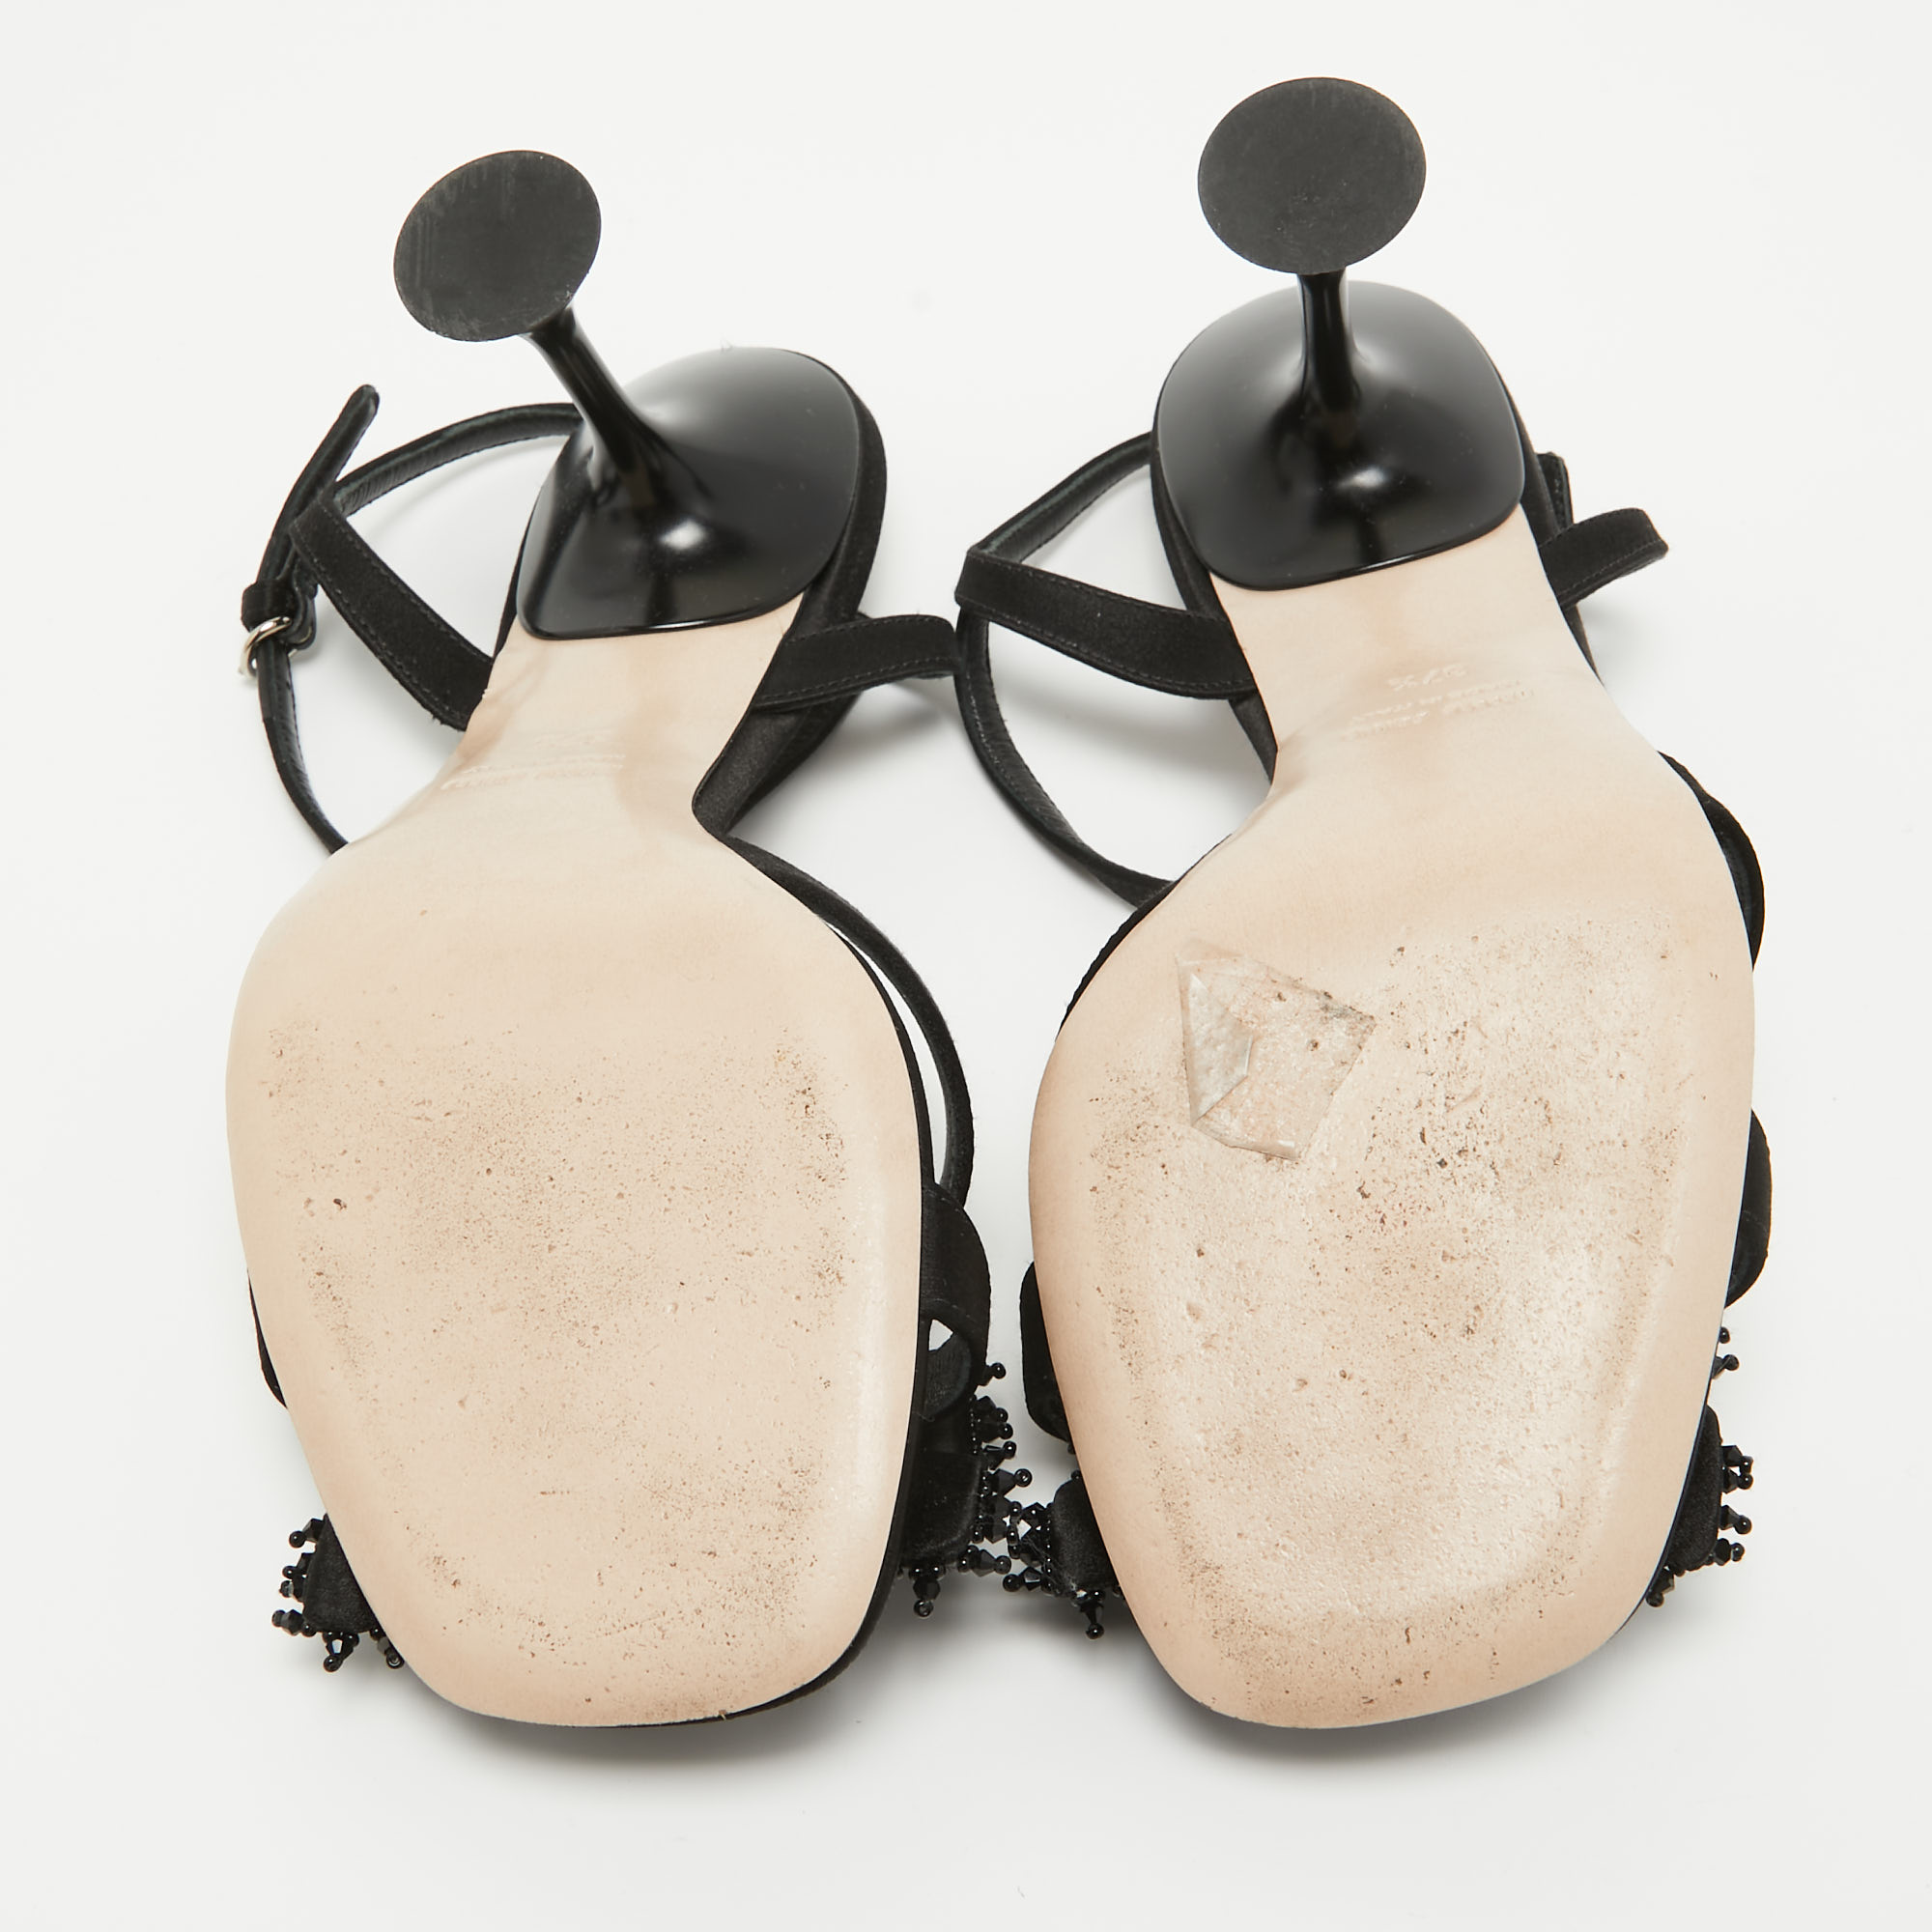 Miu Miu Black Satin Embellished Ankle Strap Sandals Size 37.5